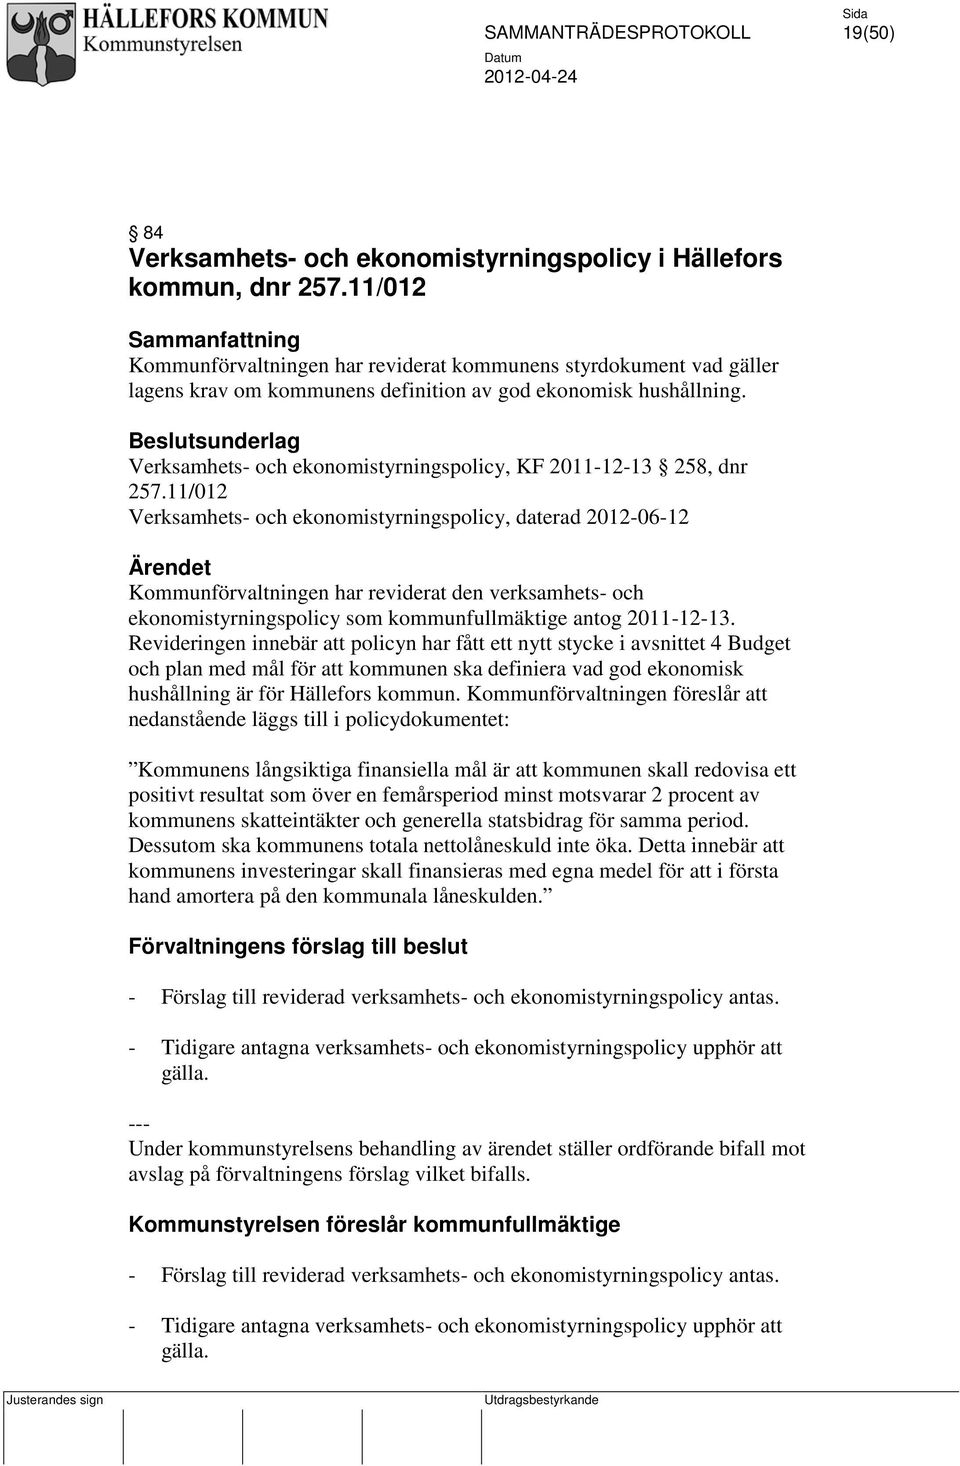 Beslutsunderlag Verksamhets- och ekonomistyrningspolicy, KF 2011-12-13 258, dnr 257.